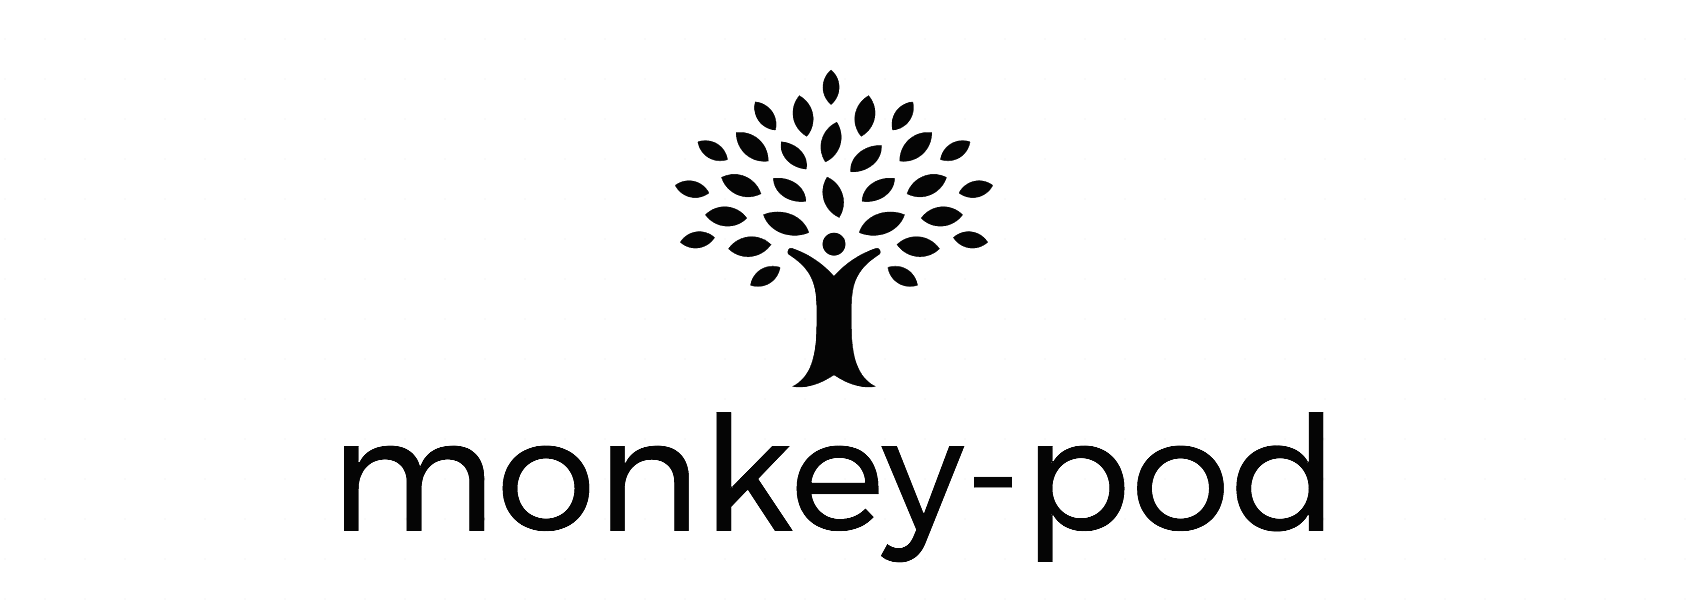 monkey-pod tag 3